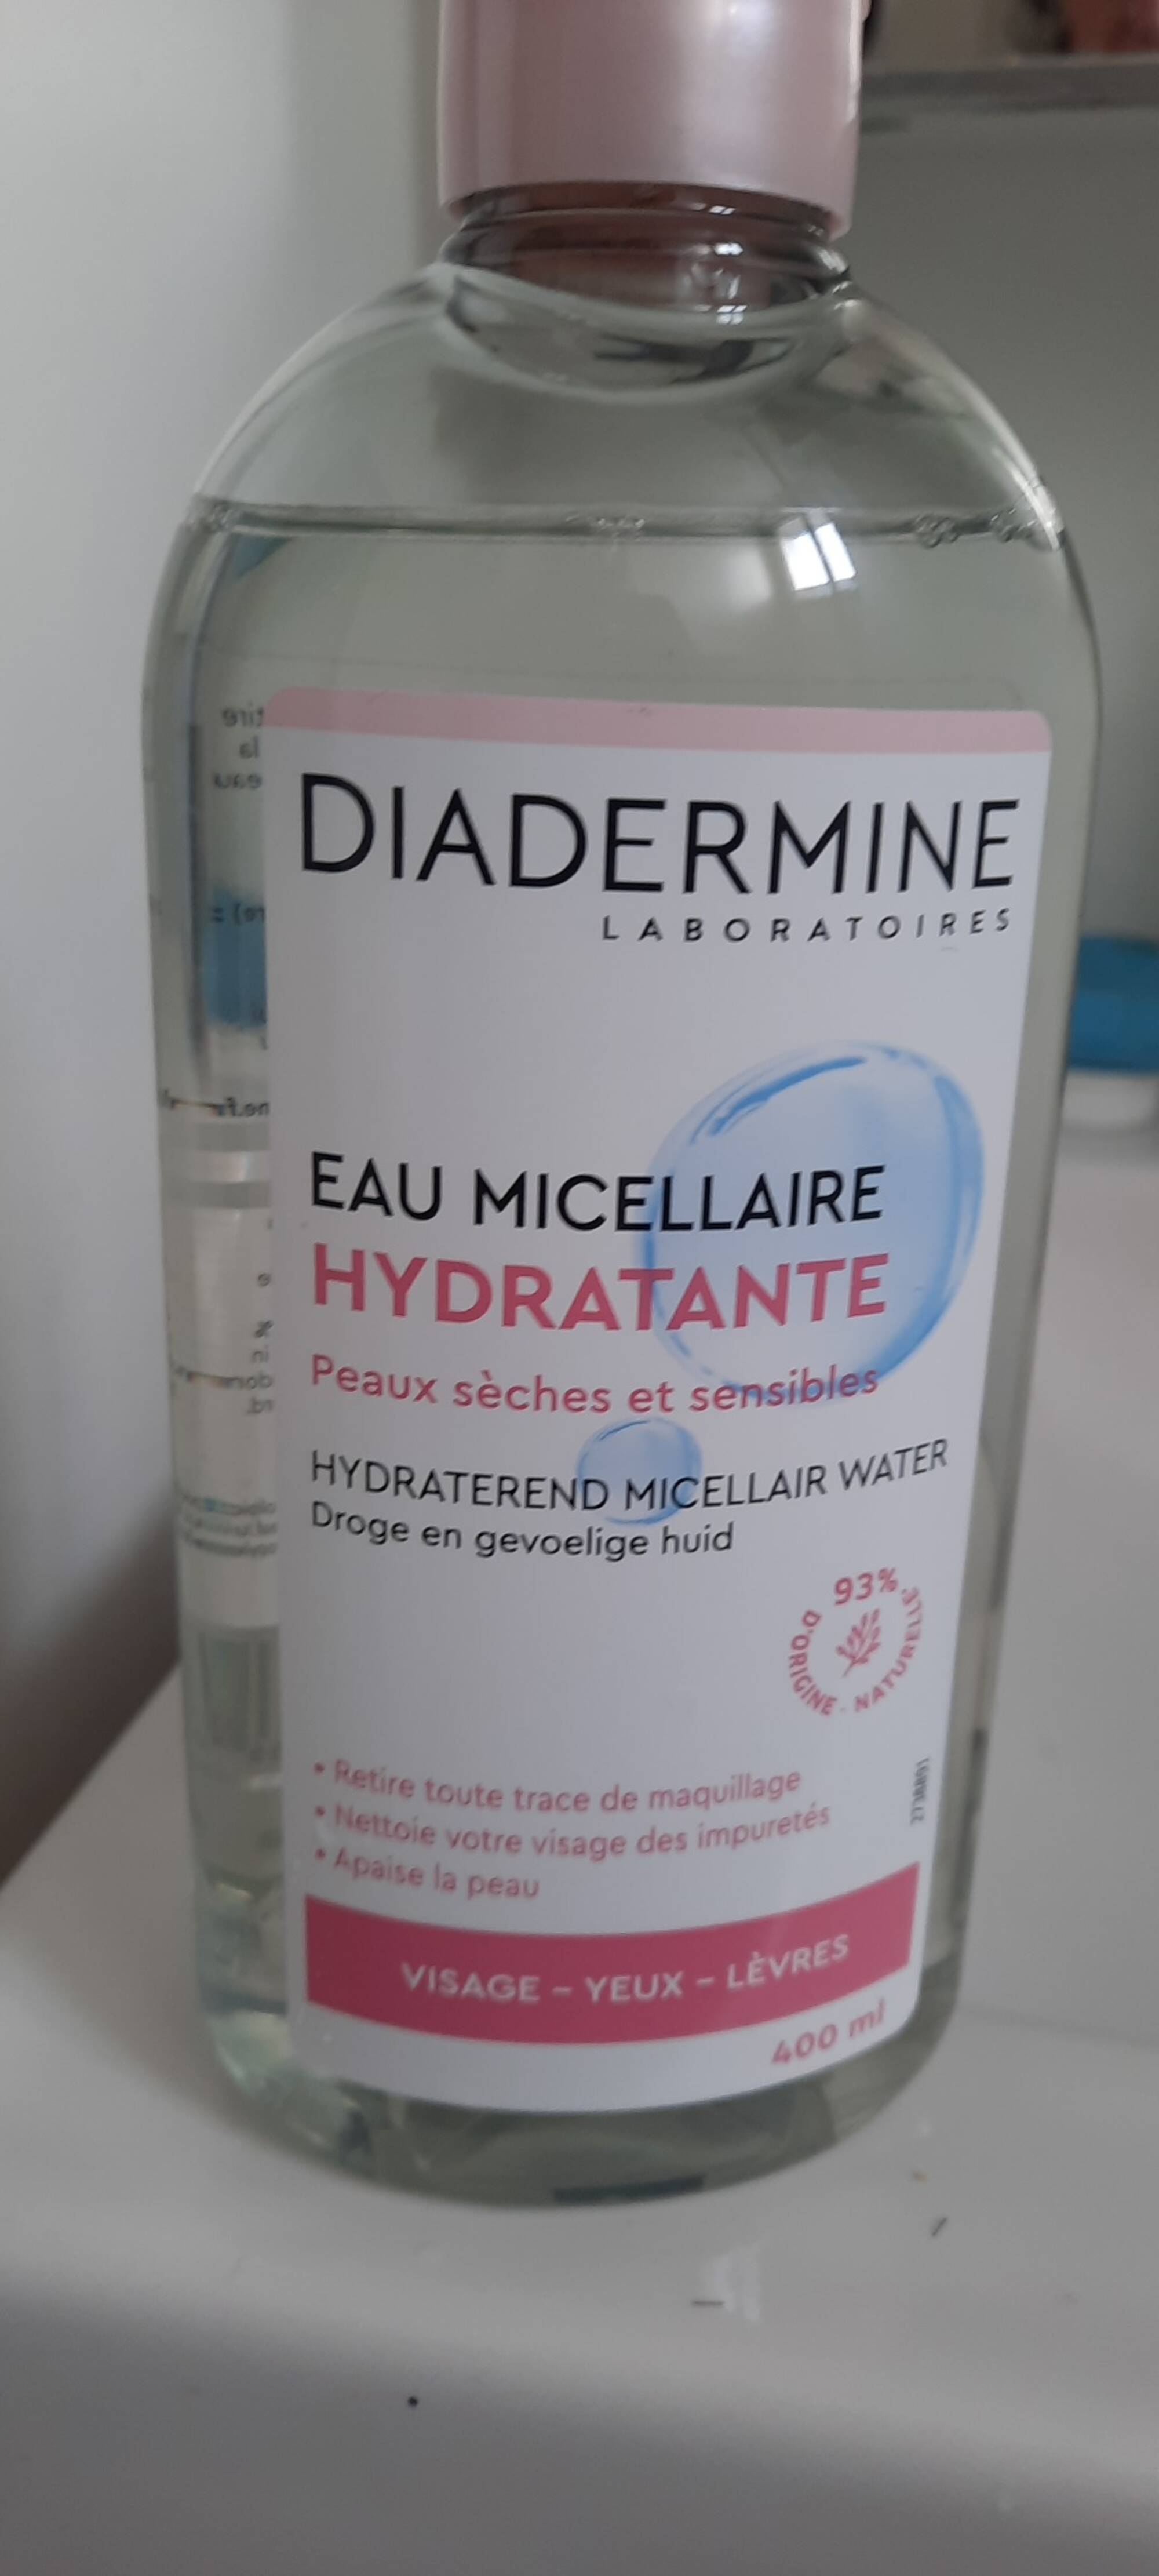 DIADERMINE - Eau micellaire hydratante